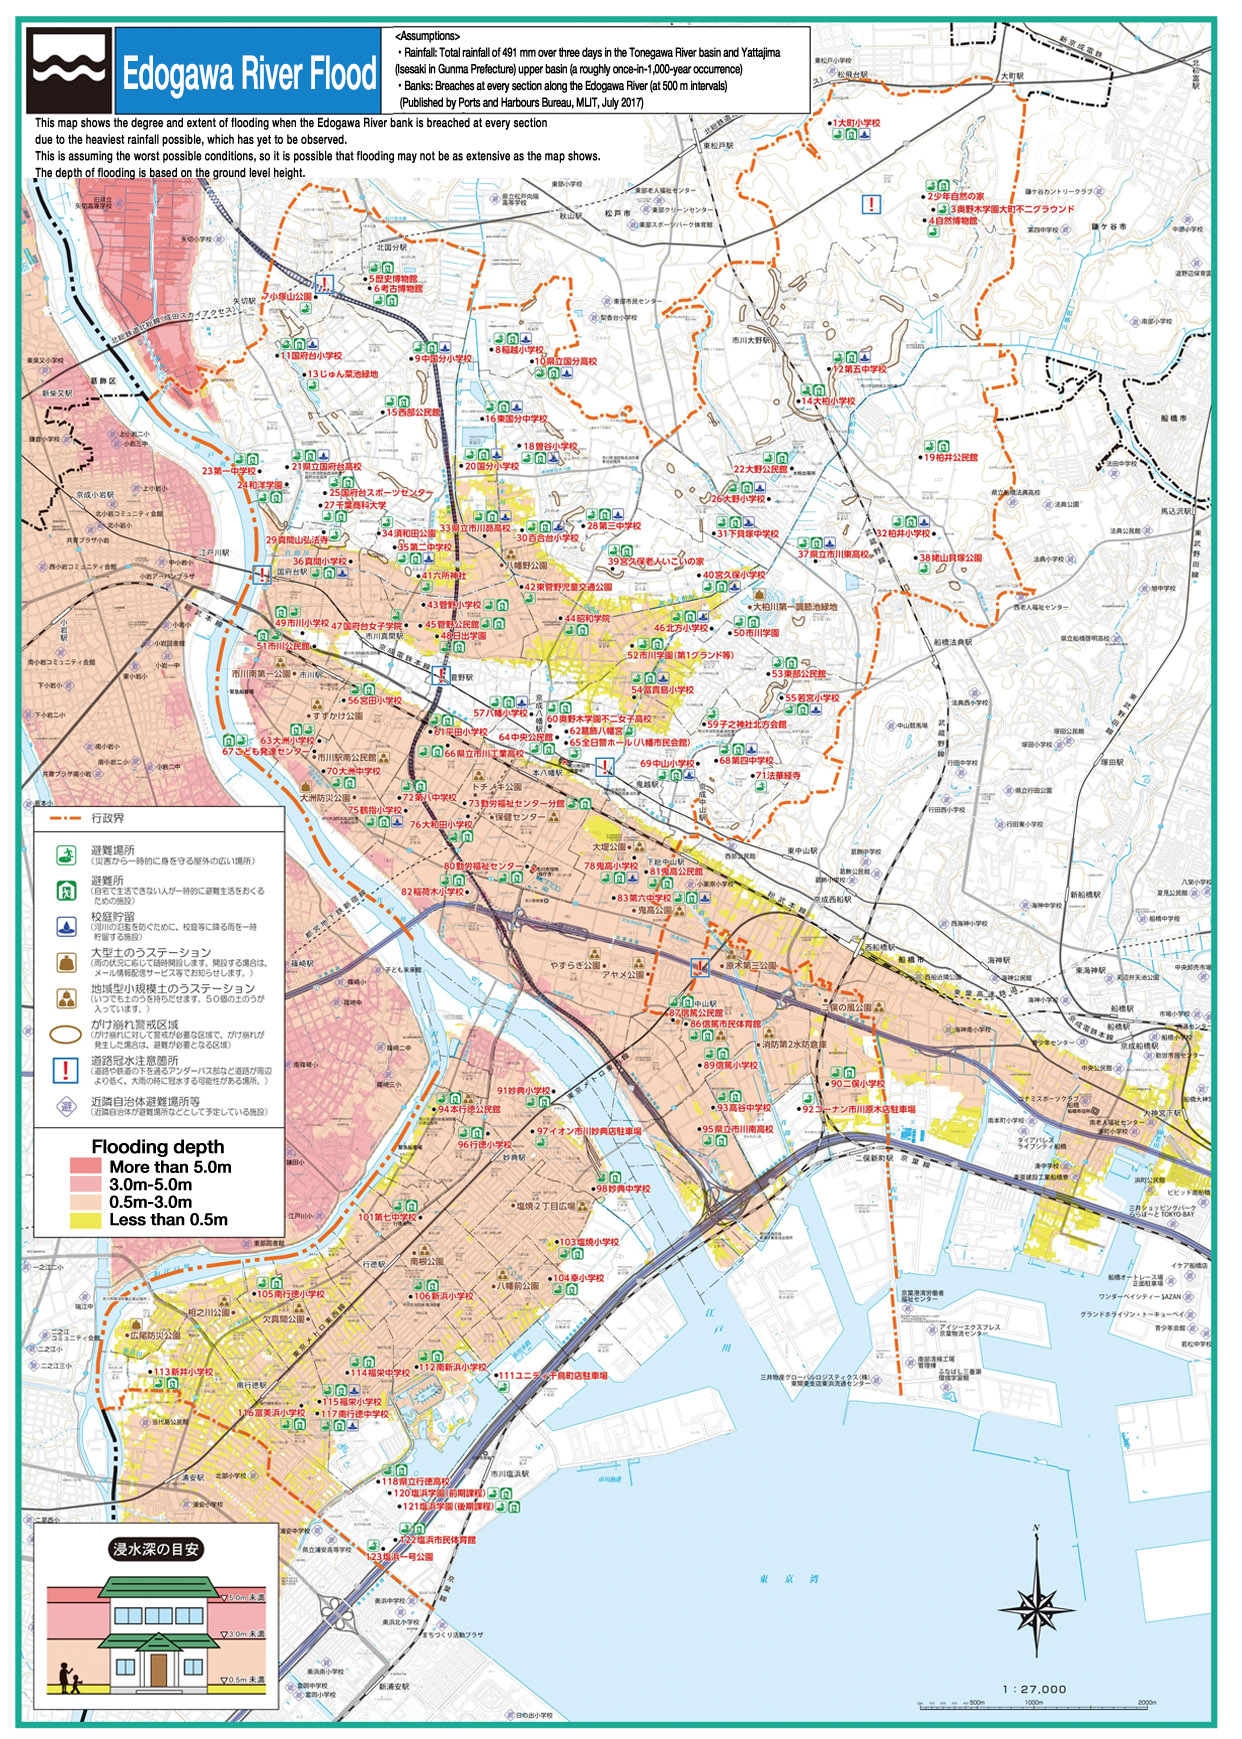 市川市水害ハザードマップを令和2年5月にリニューアルしました 市川市公式webサイト